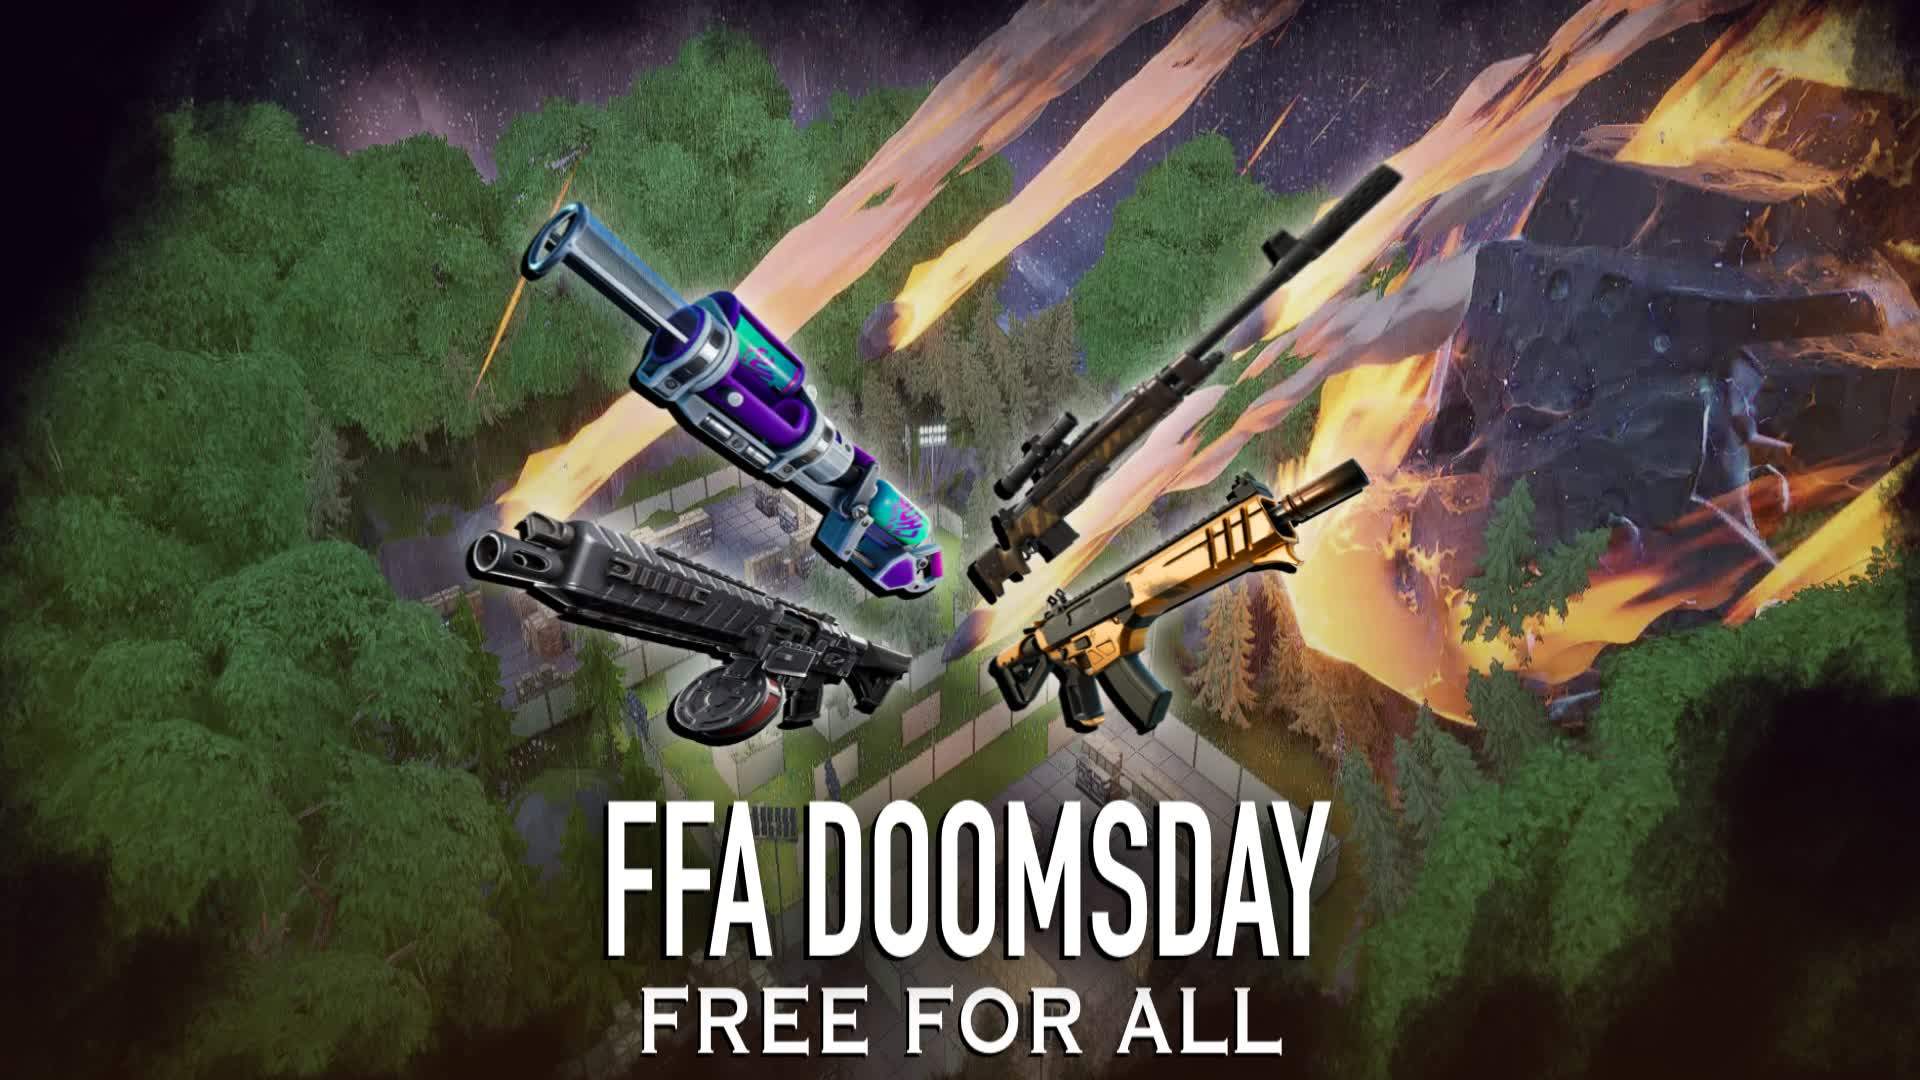 FFA Doomsday